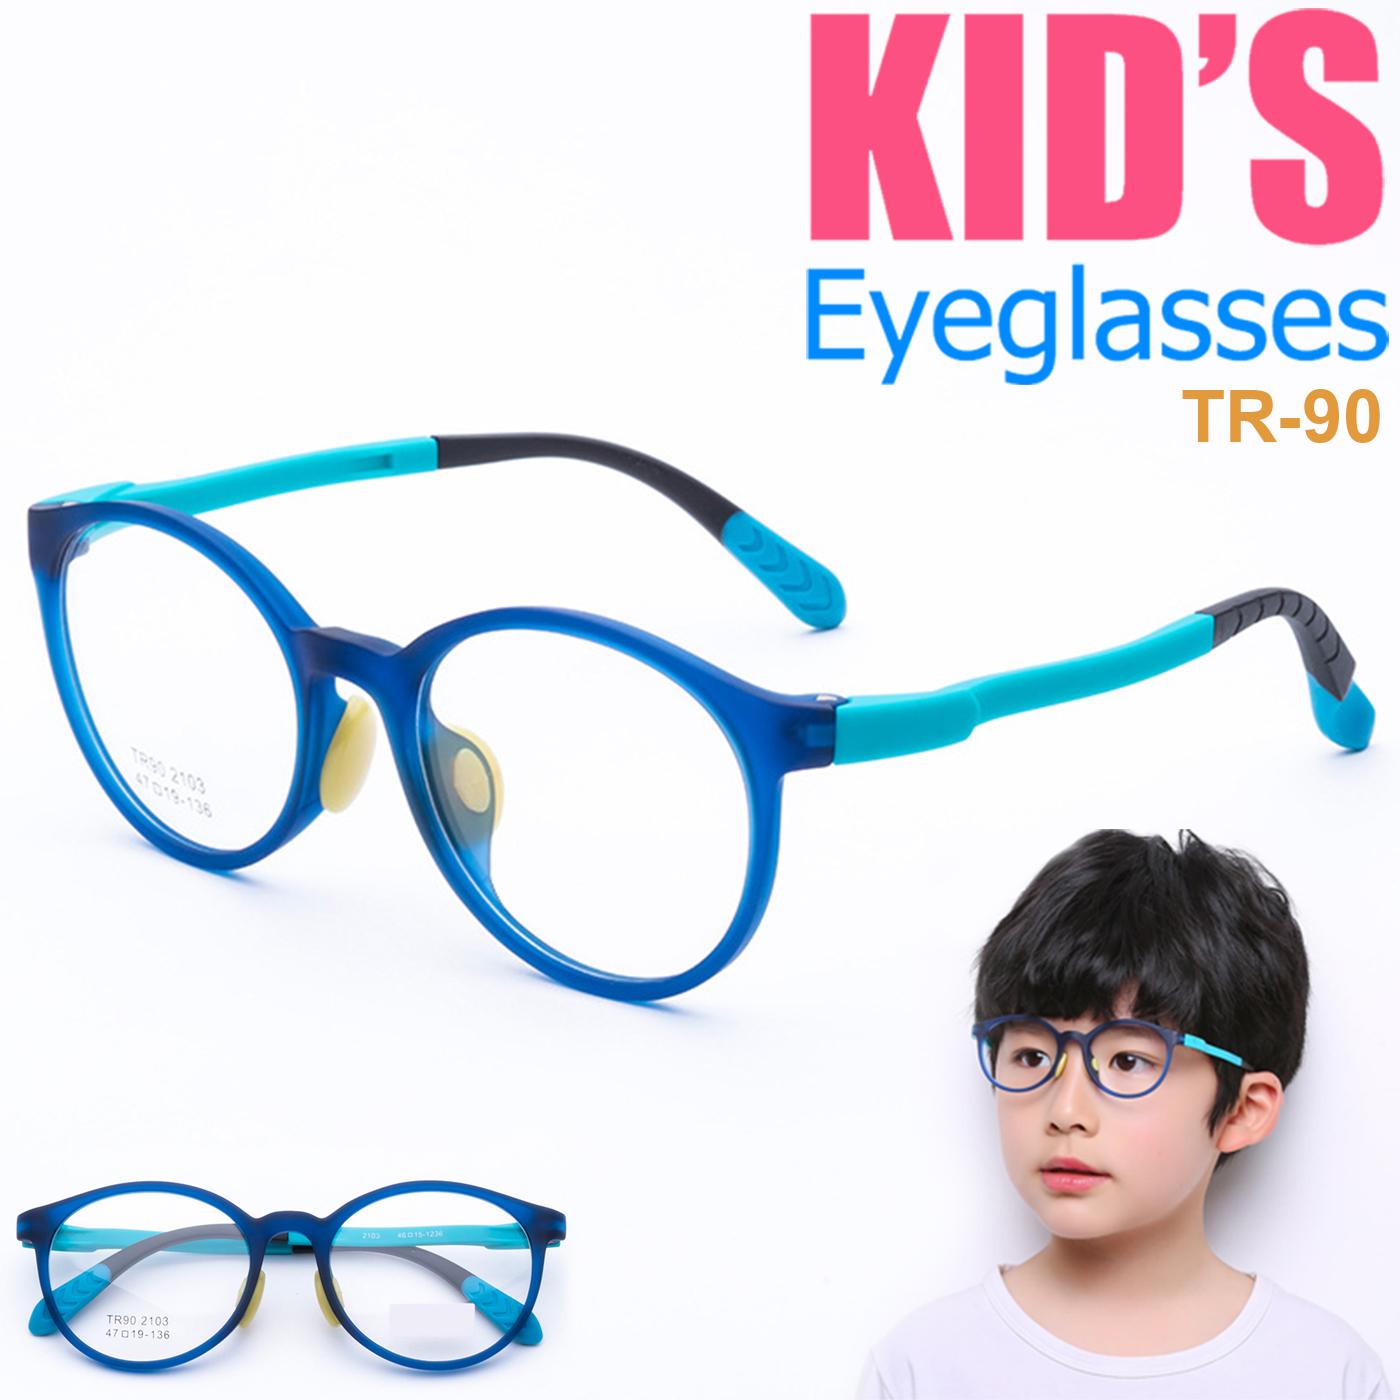 แว่นตาเกาหลีเด็ก Fashion Korea Children แว่นตาเด็ก รุ่น 2103 C-3 สีฟ้า กรอบแว่นตาเด็ก Round ทรงกลม Eyeglass baby frame ( สำหรับตัดเลนส์ ) วัสดุ TR-90 เบาและยืดหยุนได้สูง ขาข้อต่อ Kid eyewear Glasses